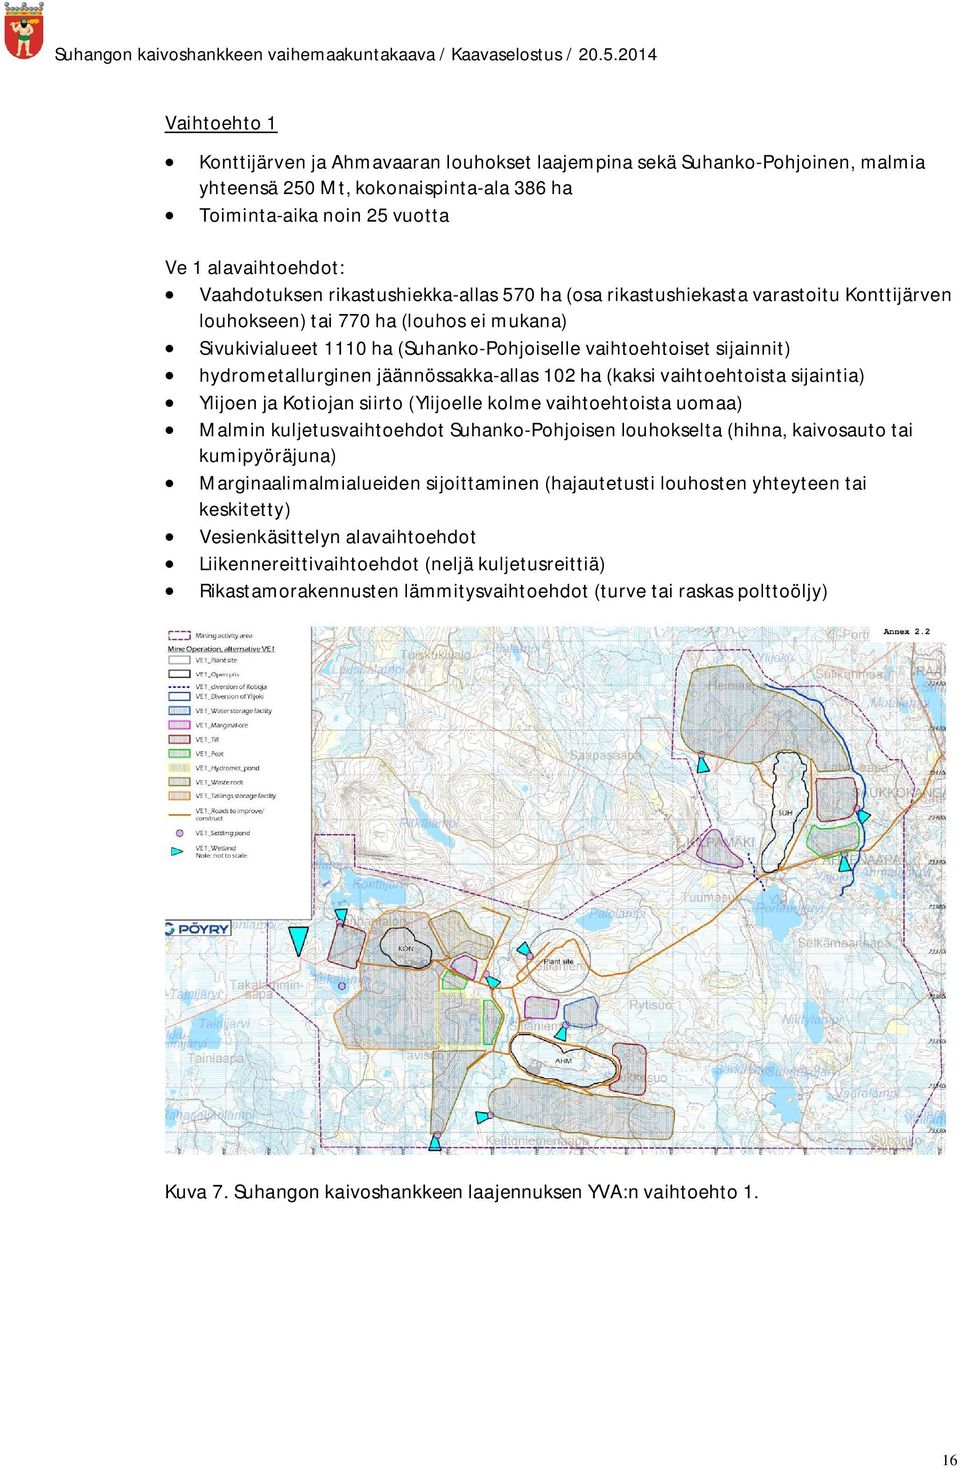 hydrometallurginen jäännössakka-allas 102 ha (kaksi vaihtoehtoista sijaintia) Ylijoen ja Kotiojan siirto (Ylijoelle kolme vaihtoehtoista uomaa) Malmin kuljetusvaihtoehdot Suhanko-Pohjoisen